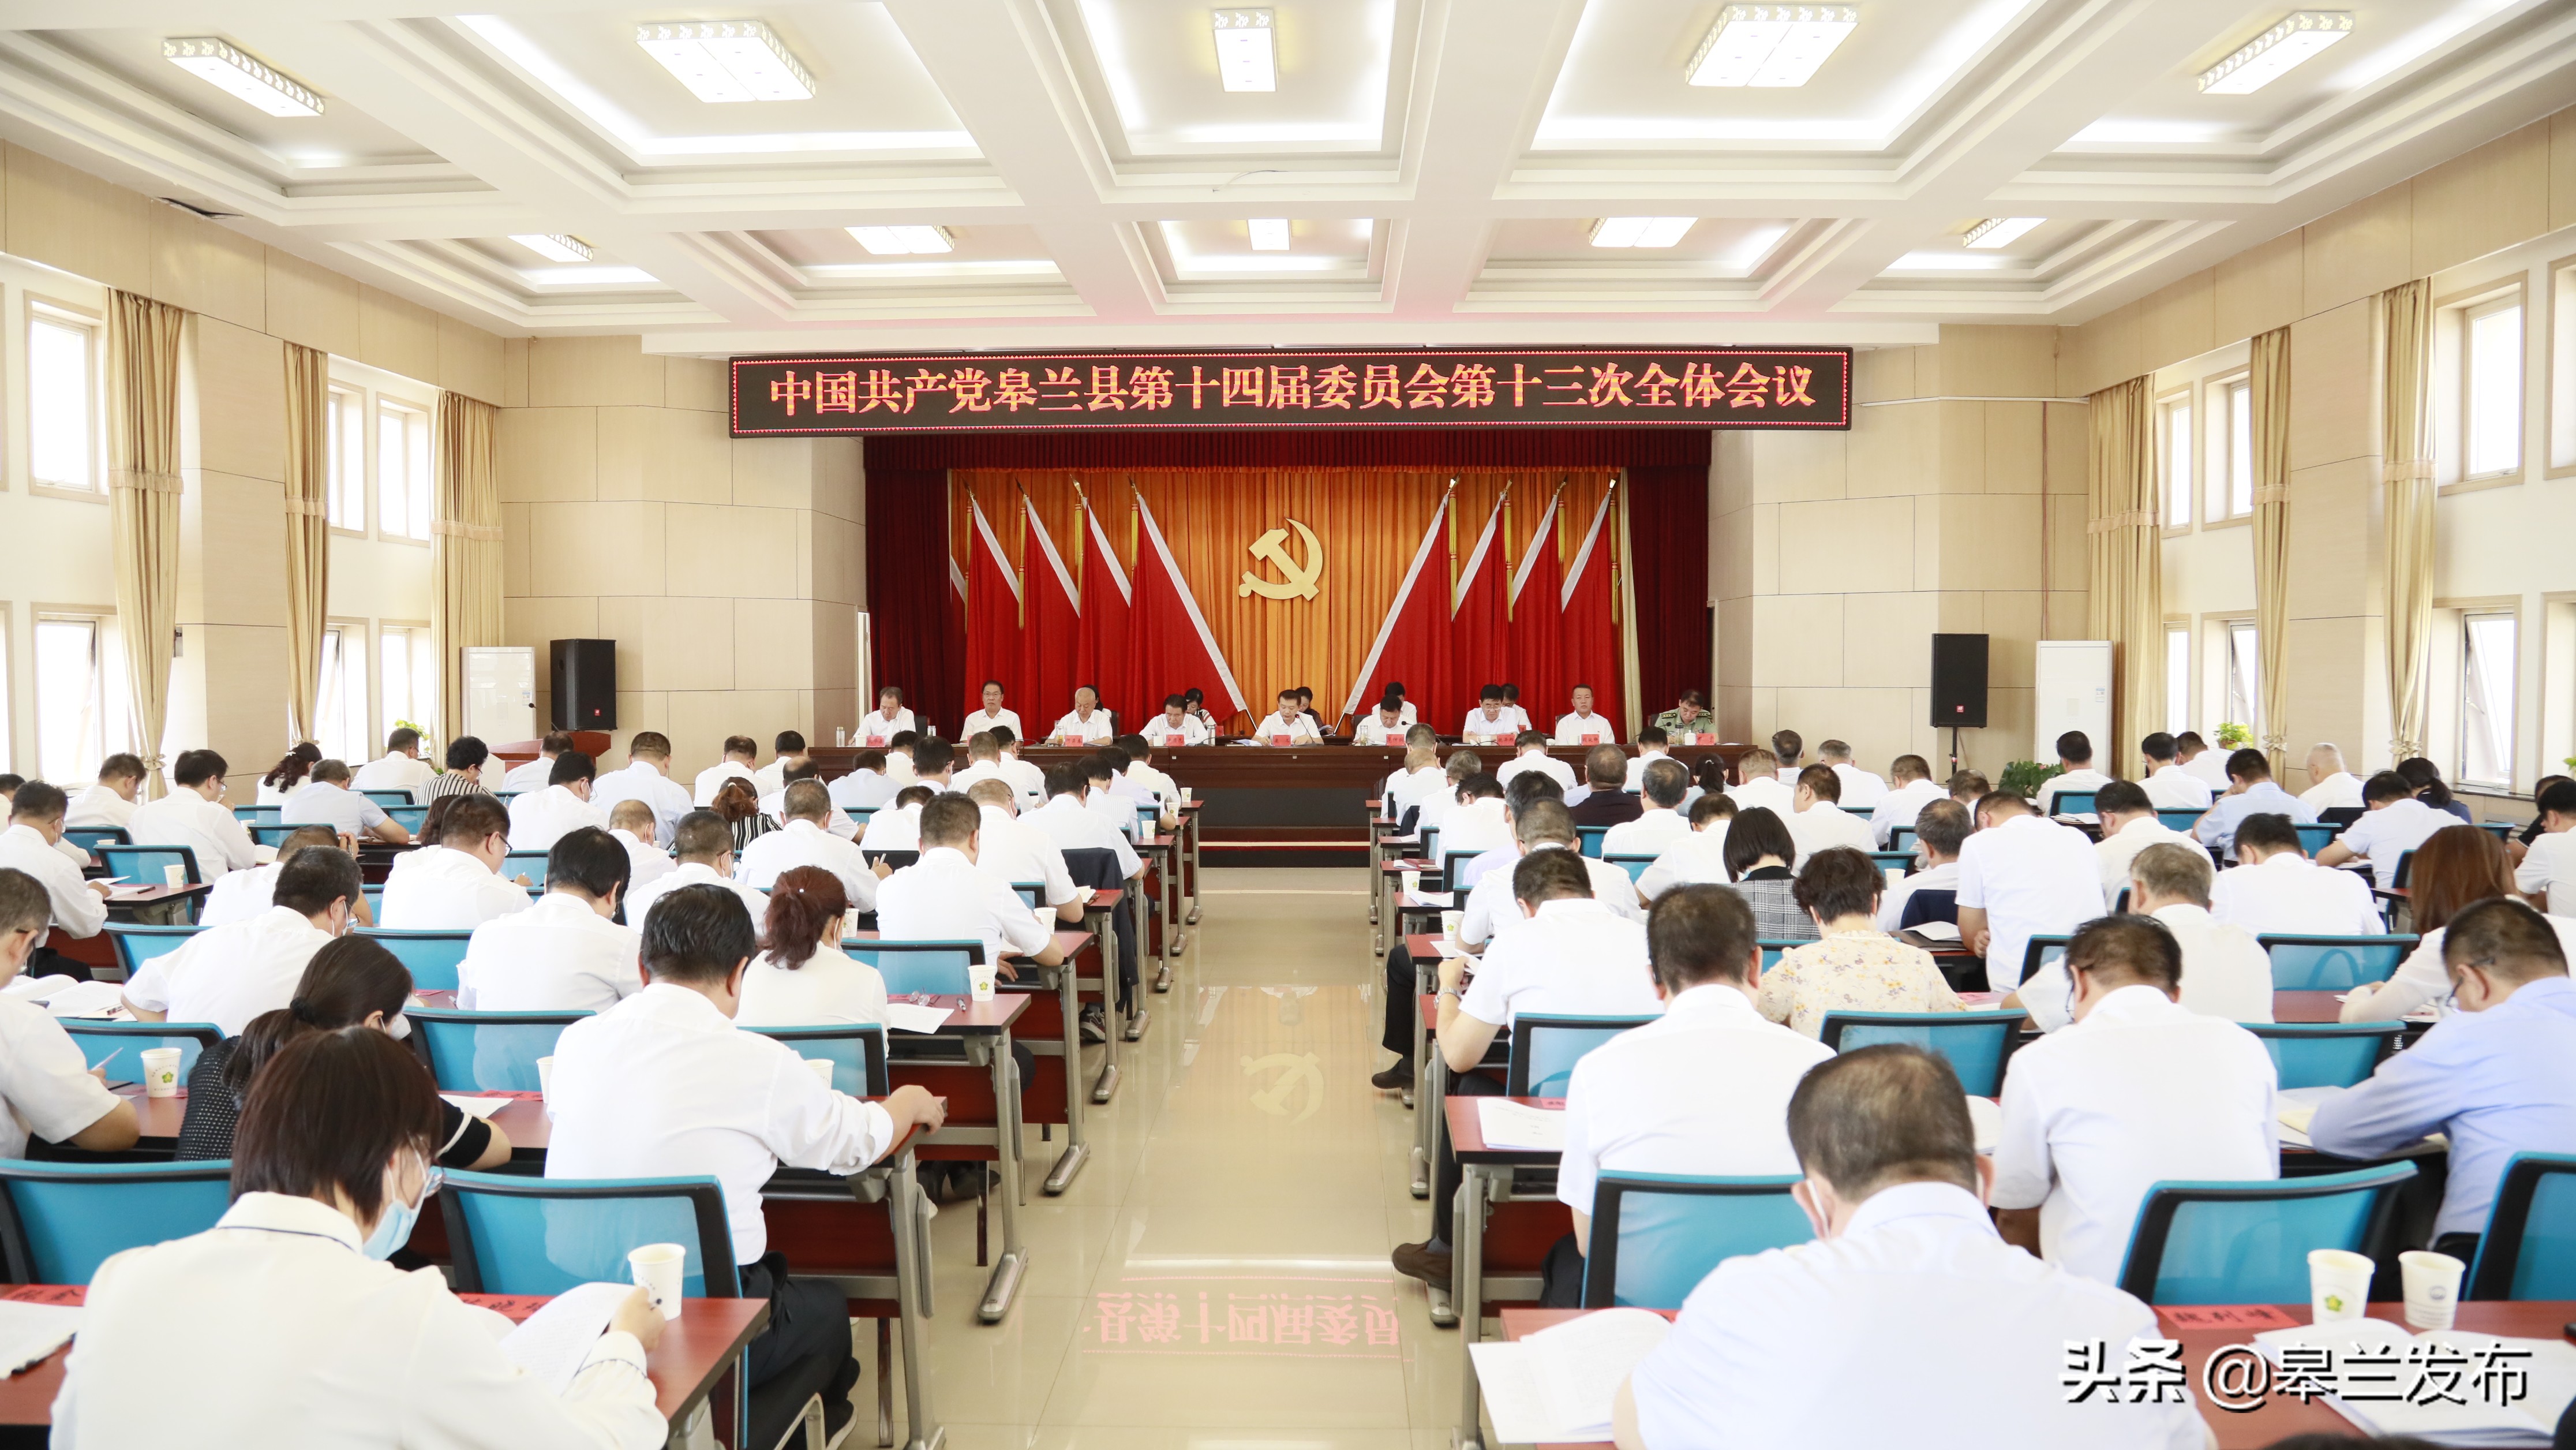 中国共产党皋兰县第十四届委员会第十三次全体会议召开